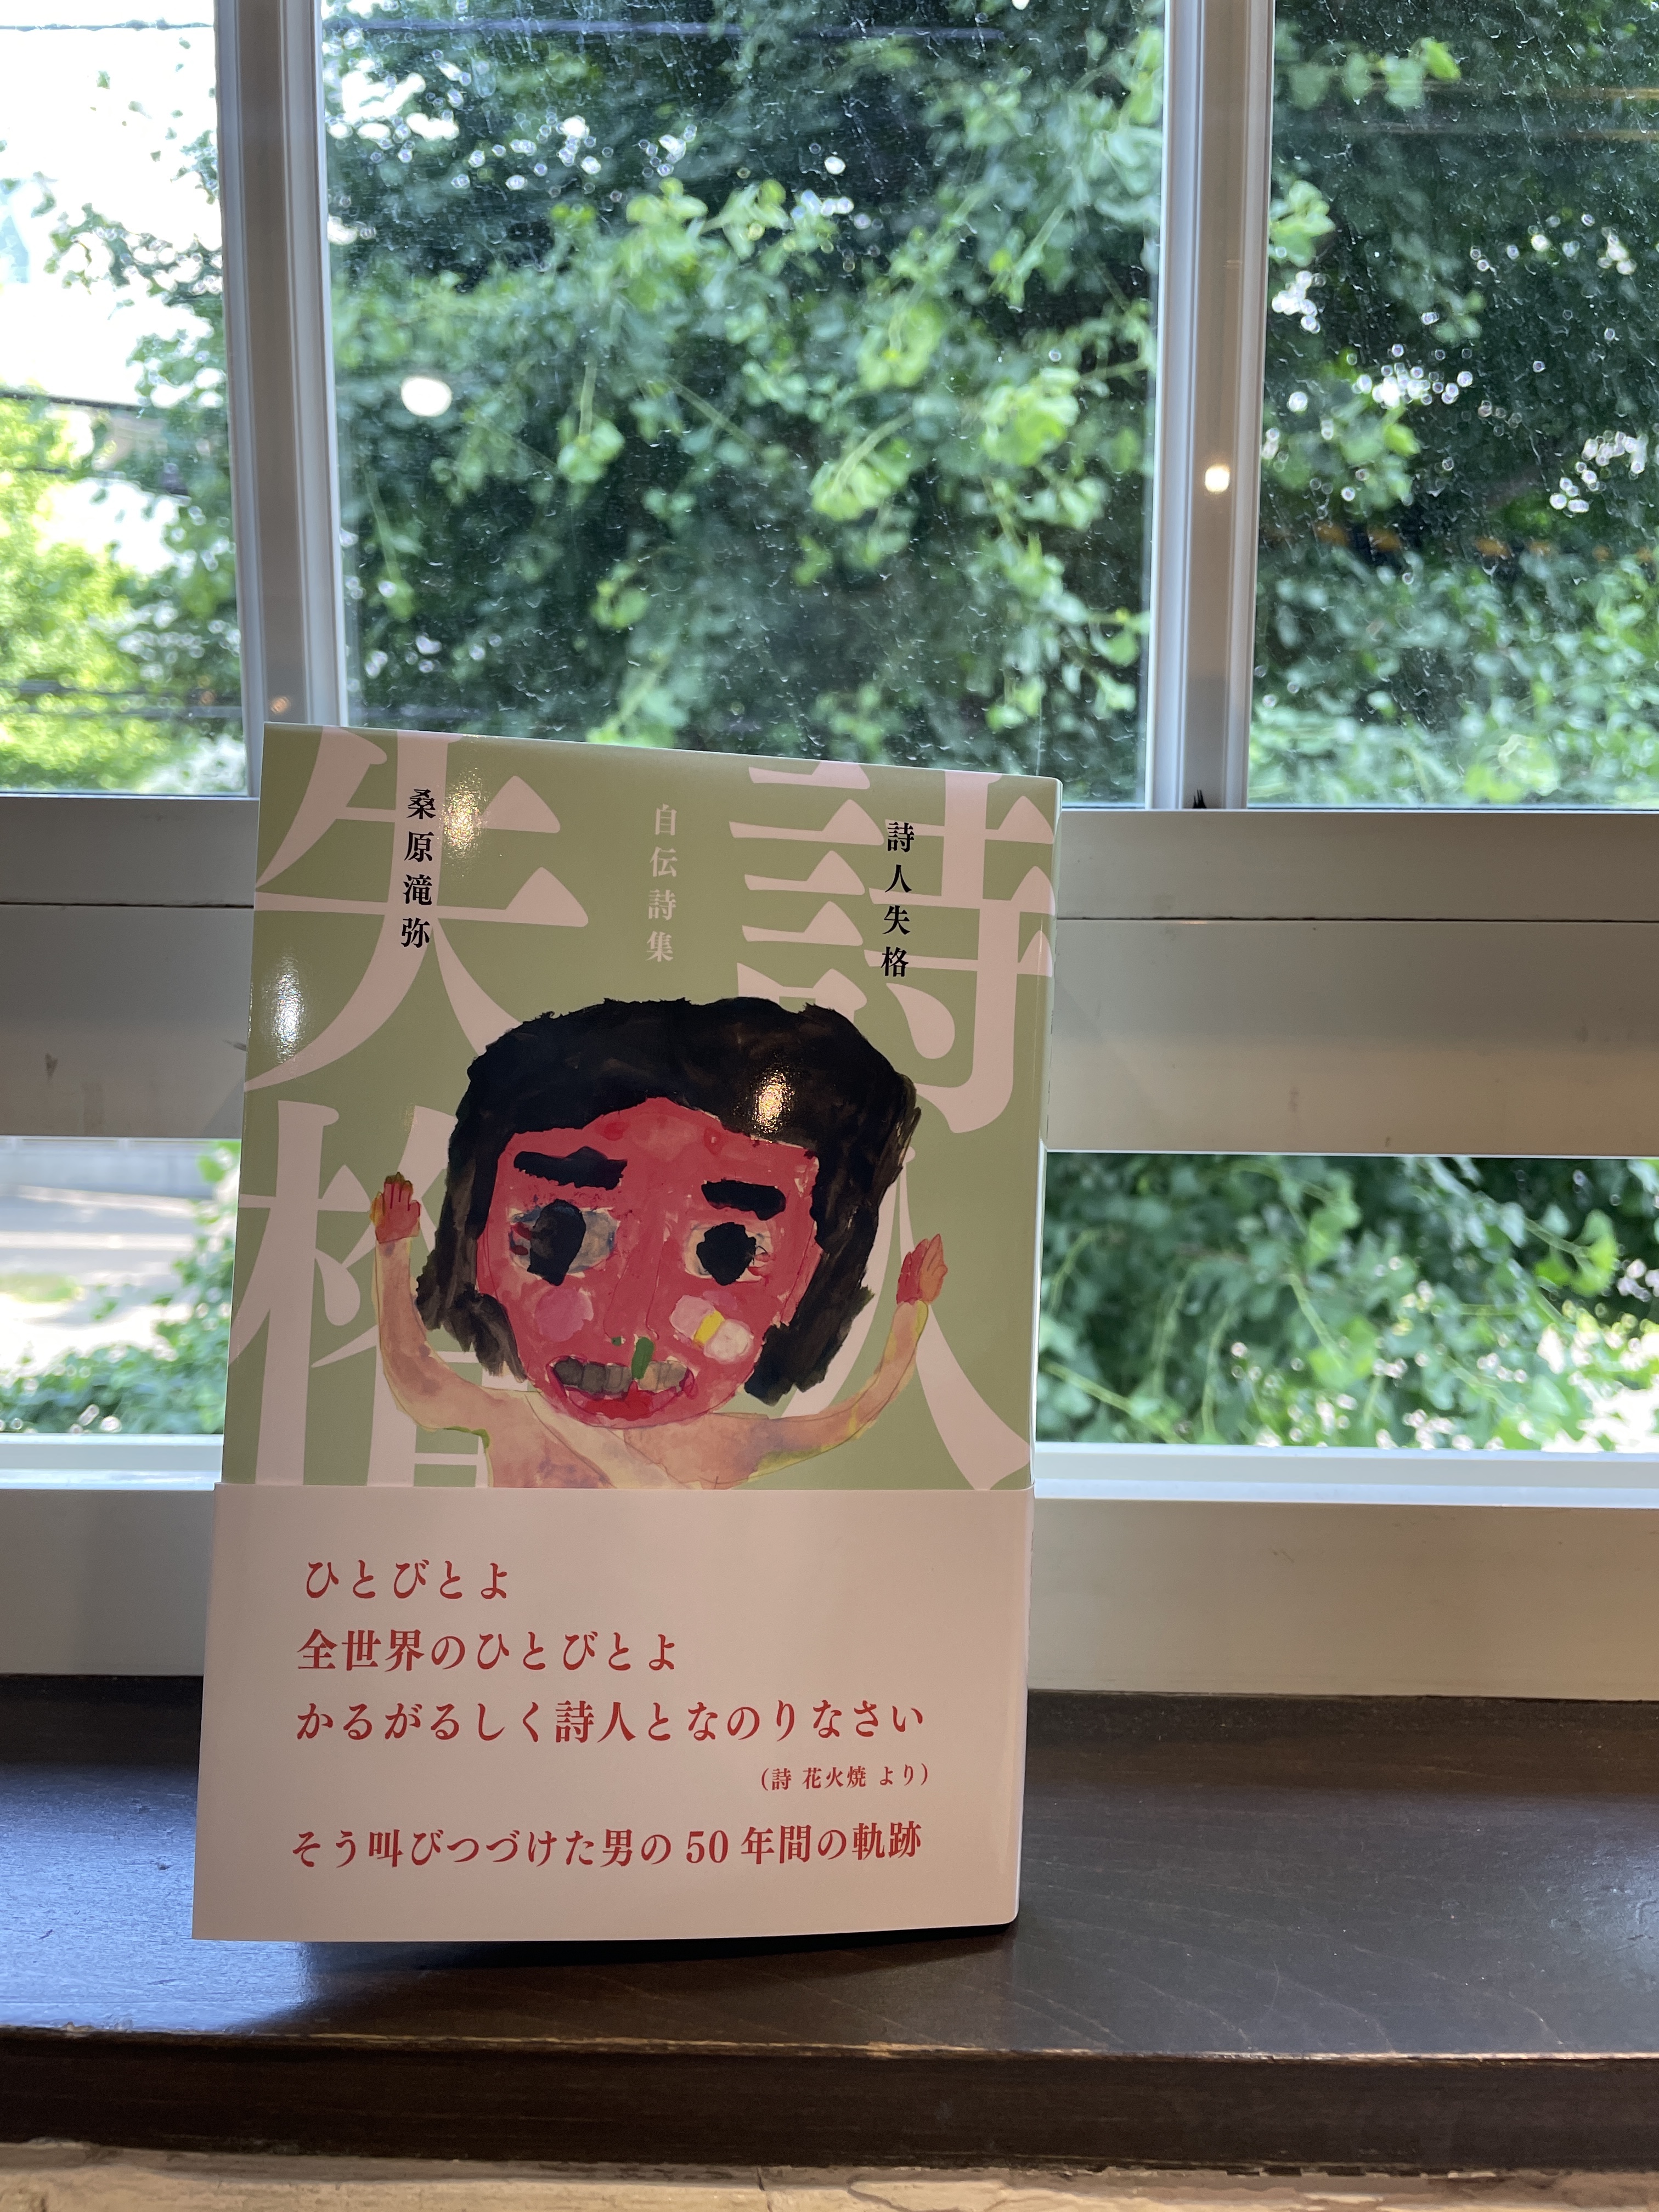 「俊読」を主催して来た詩人・桑原滝弥さんの自伝詩集『詩人失格』発売！